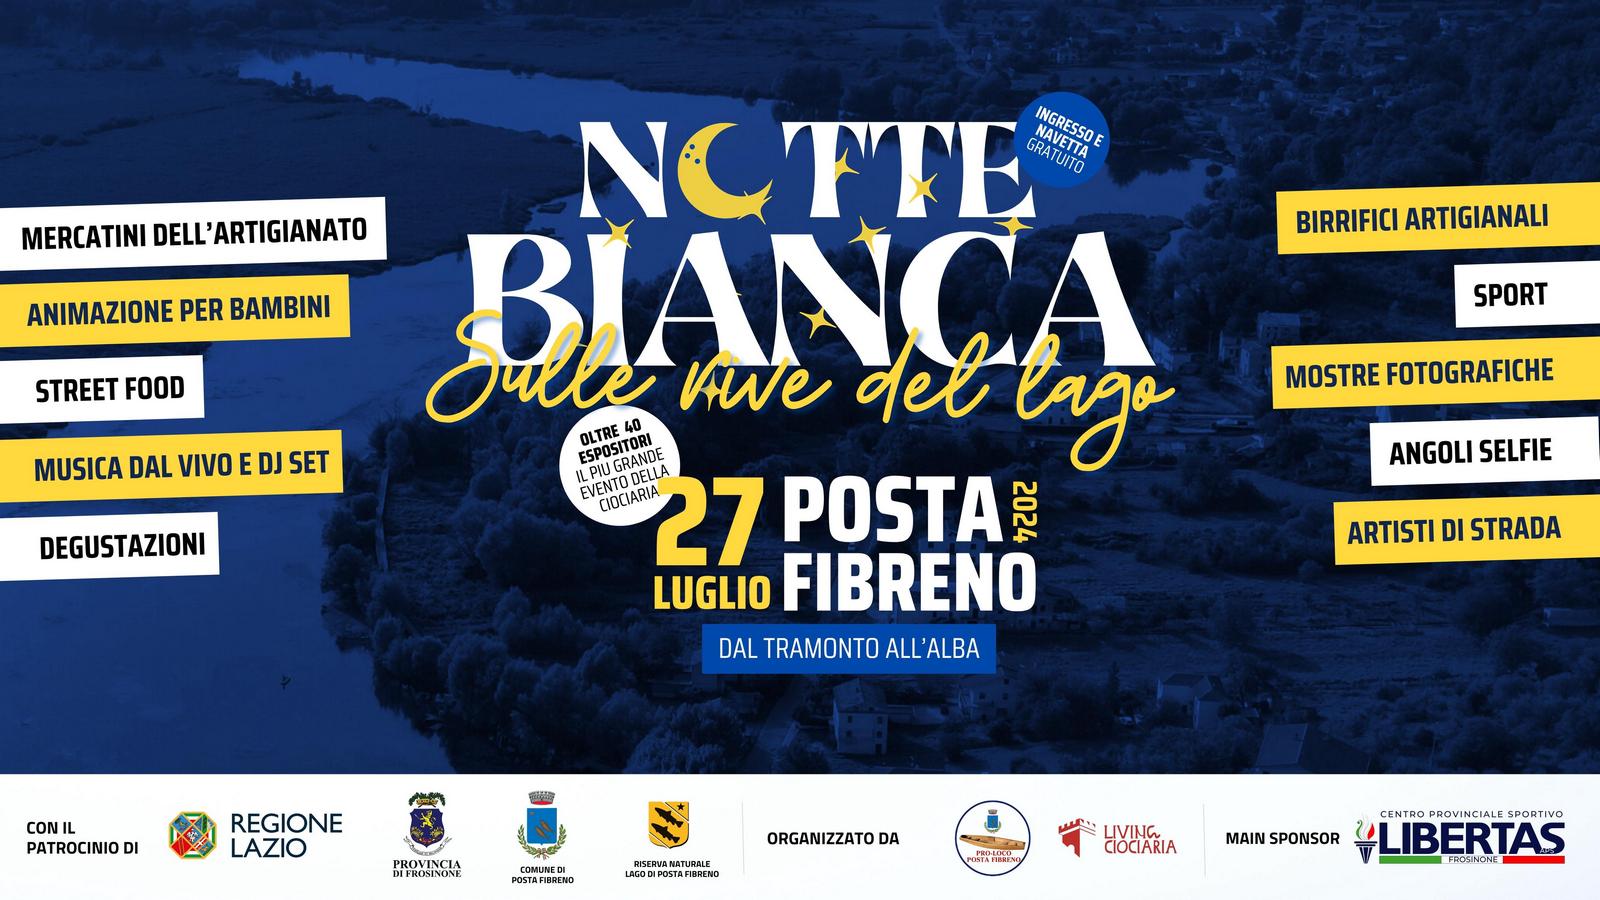 Featured image for “Notte Bianca a Posta Fibreno: un’esperienza magica sulle rive del lago”